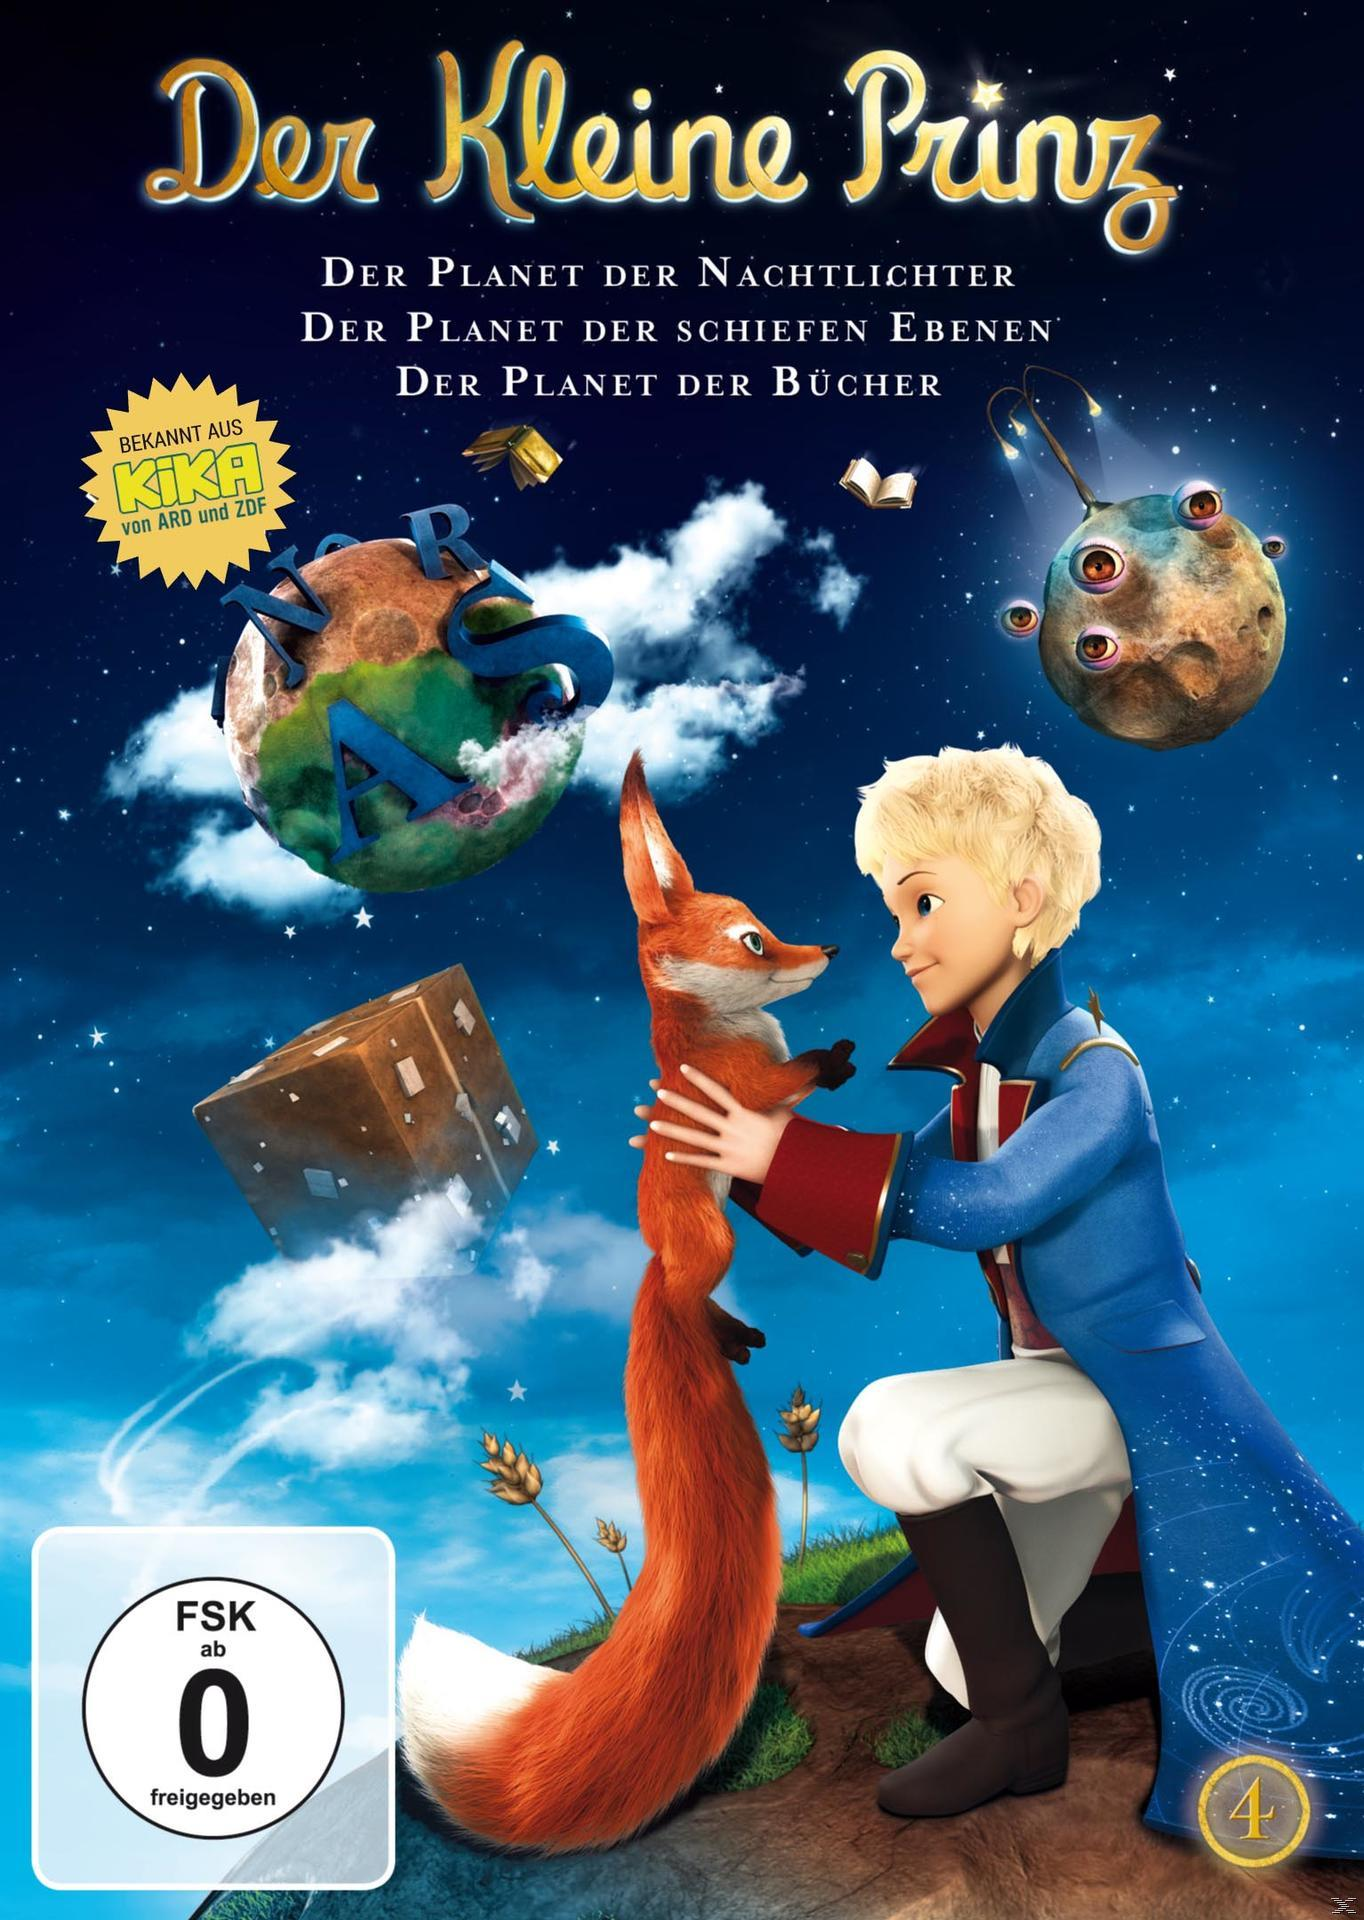 Der kleine Prinz DVD Vol. 4